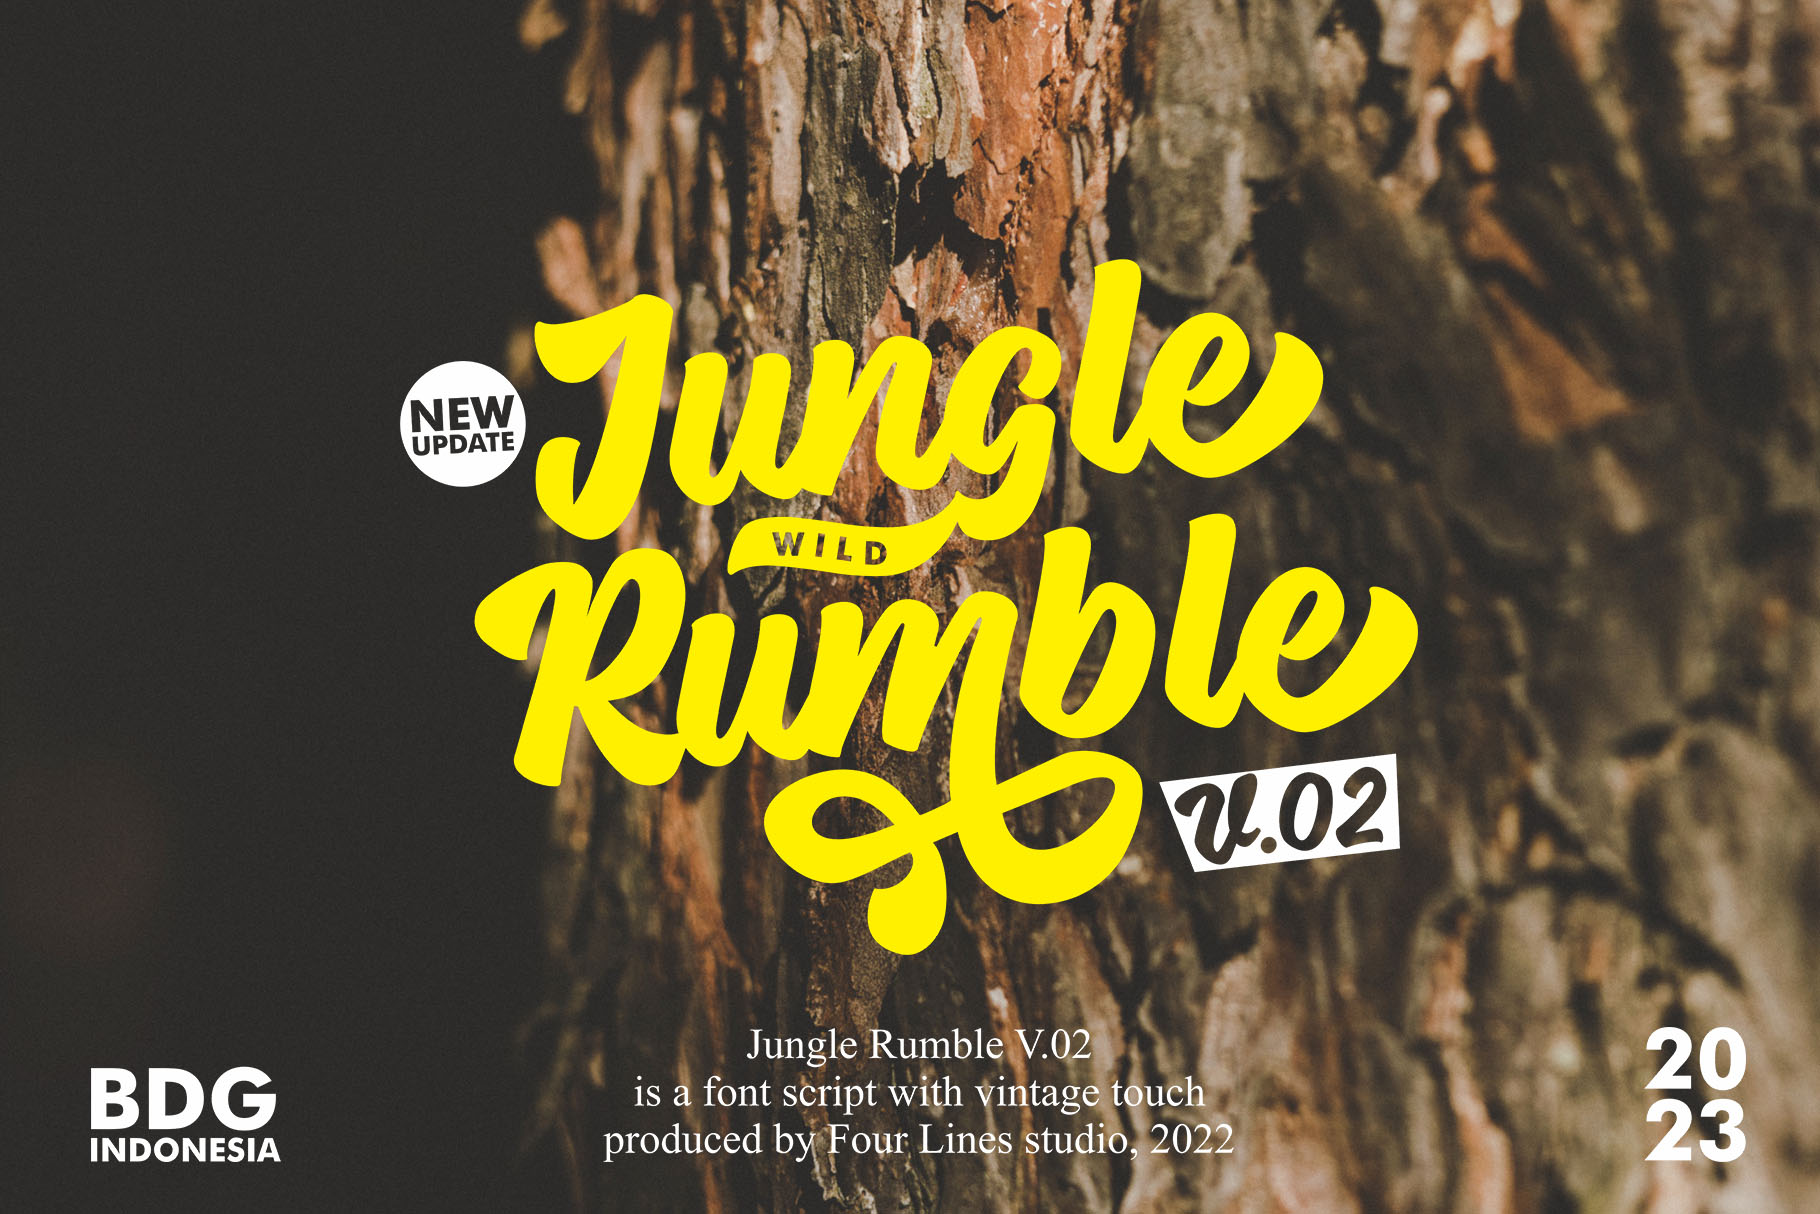 Jungle Rumble V.02